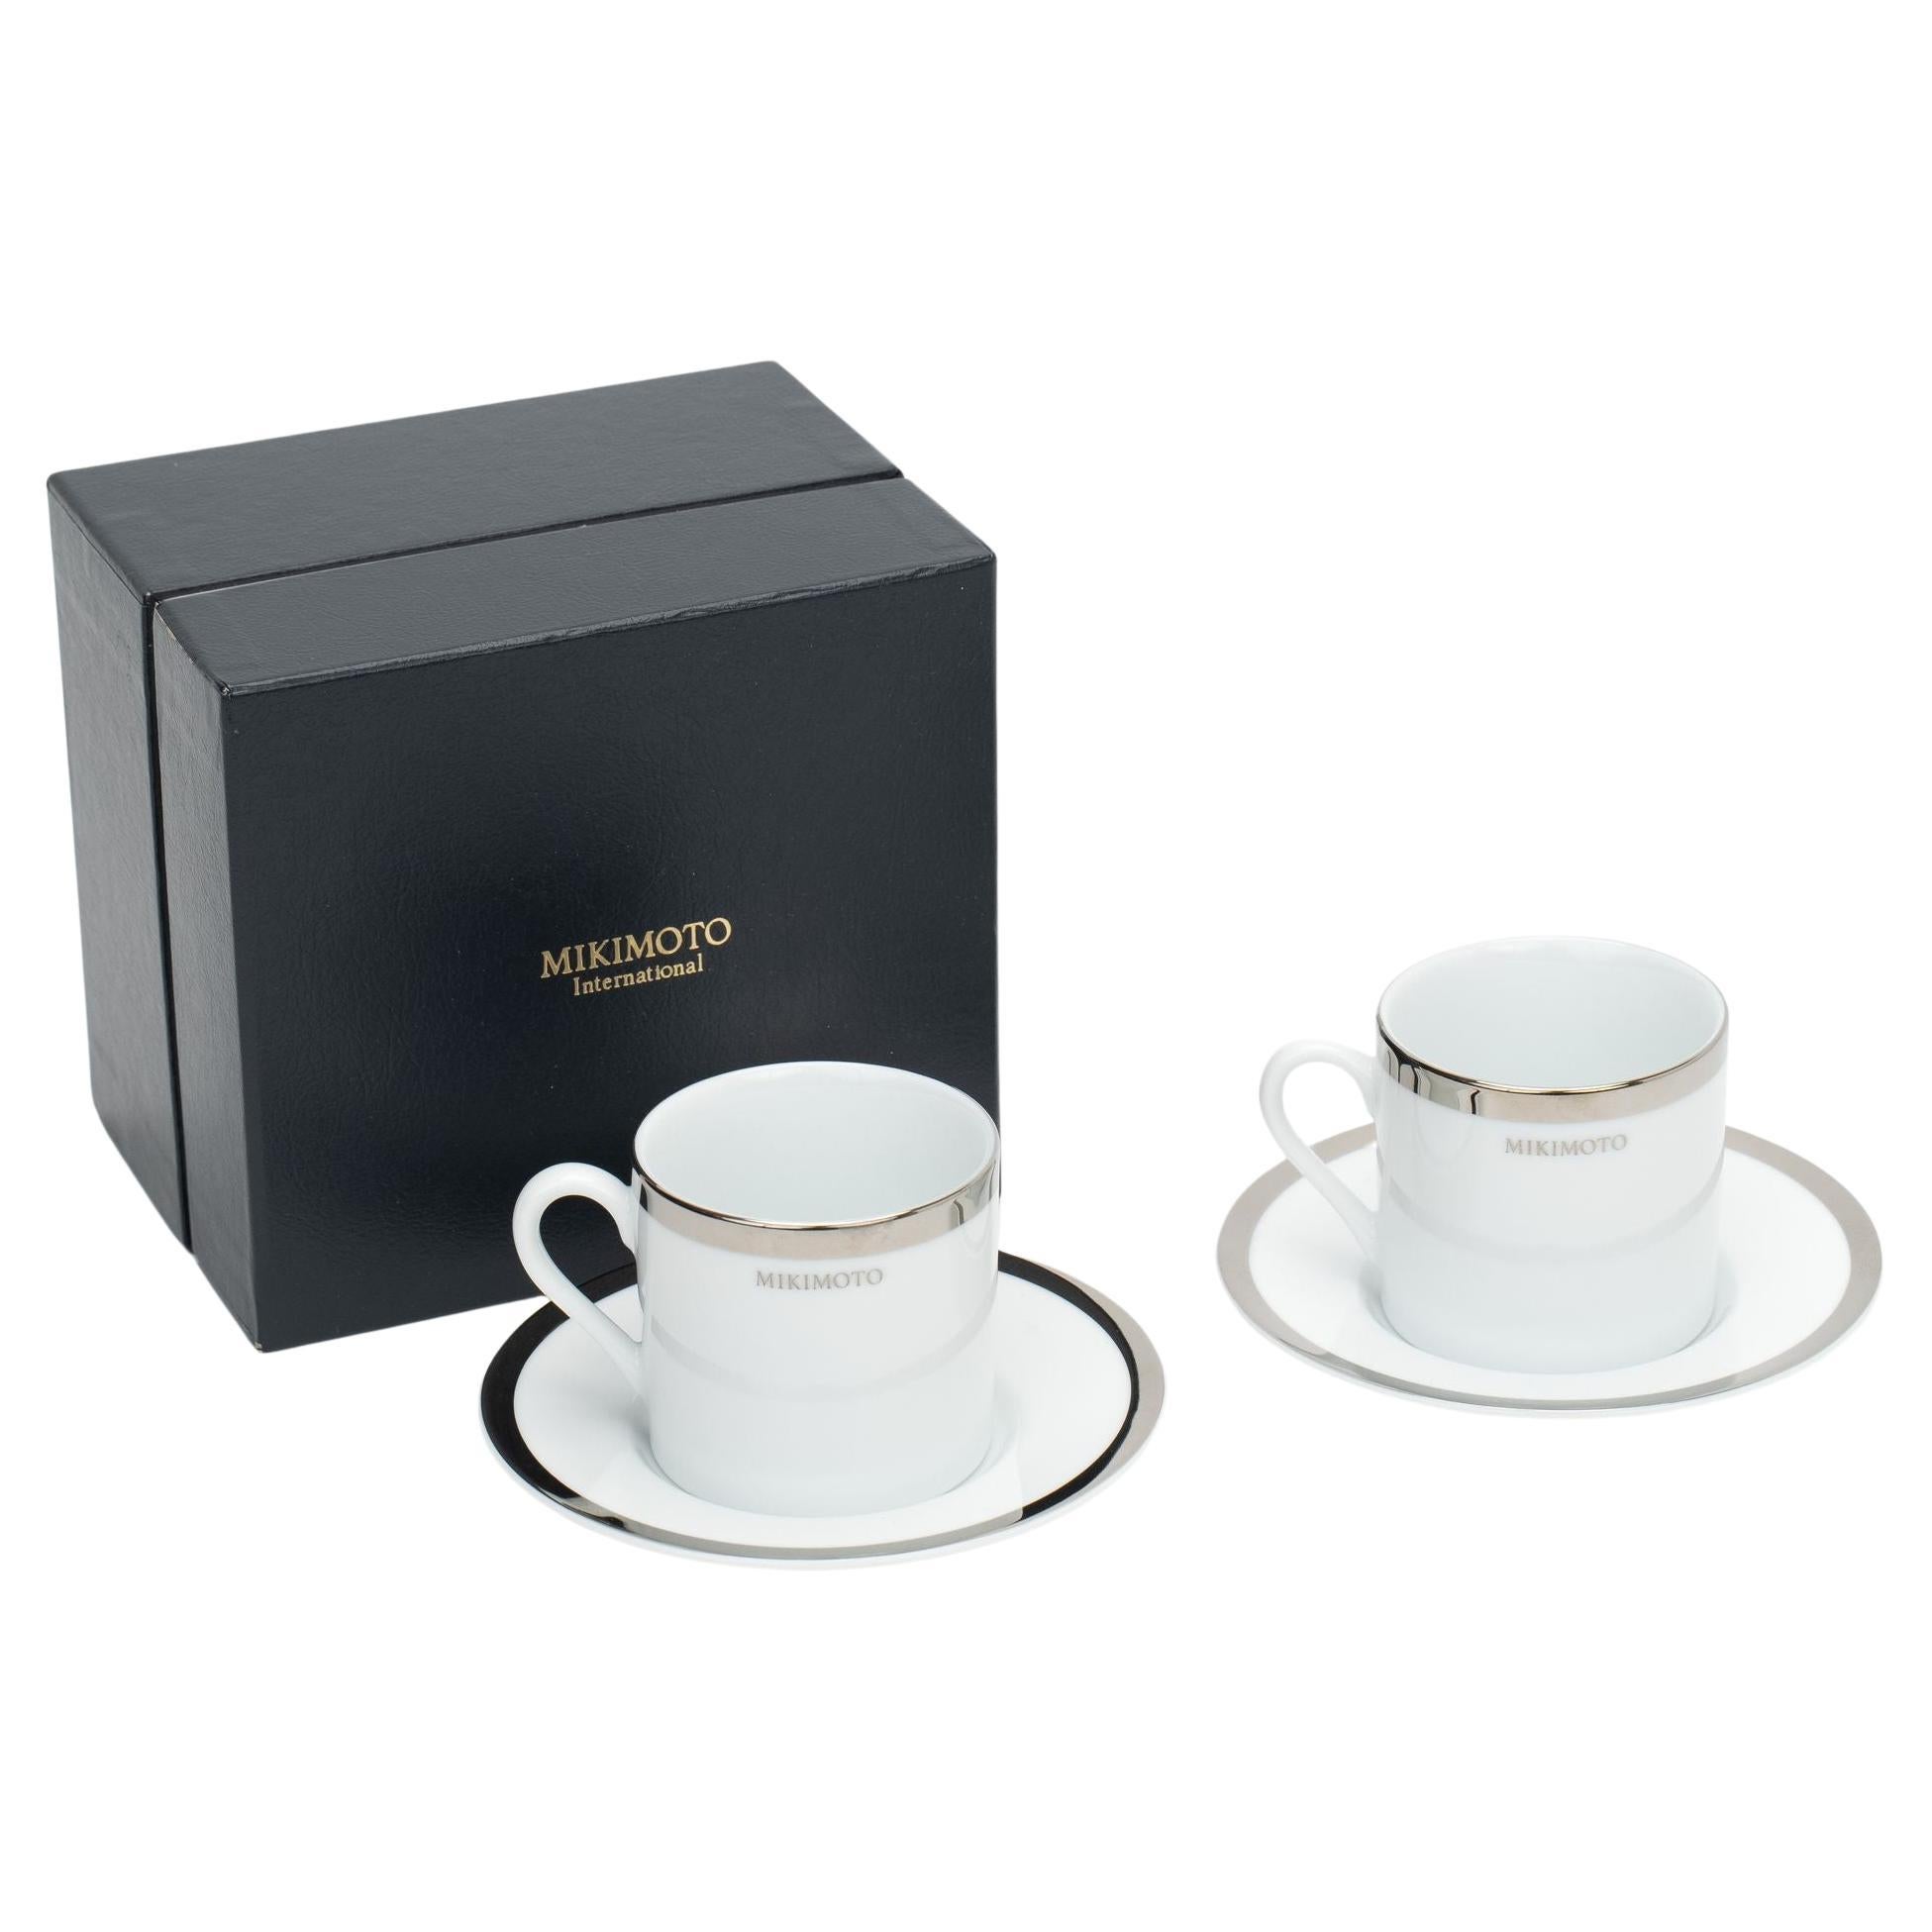 Mikimoto White Platinum Espresso Cups For Sale